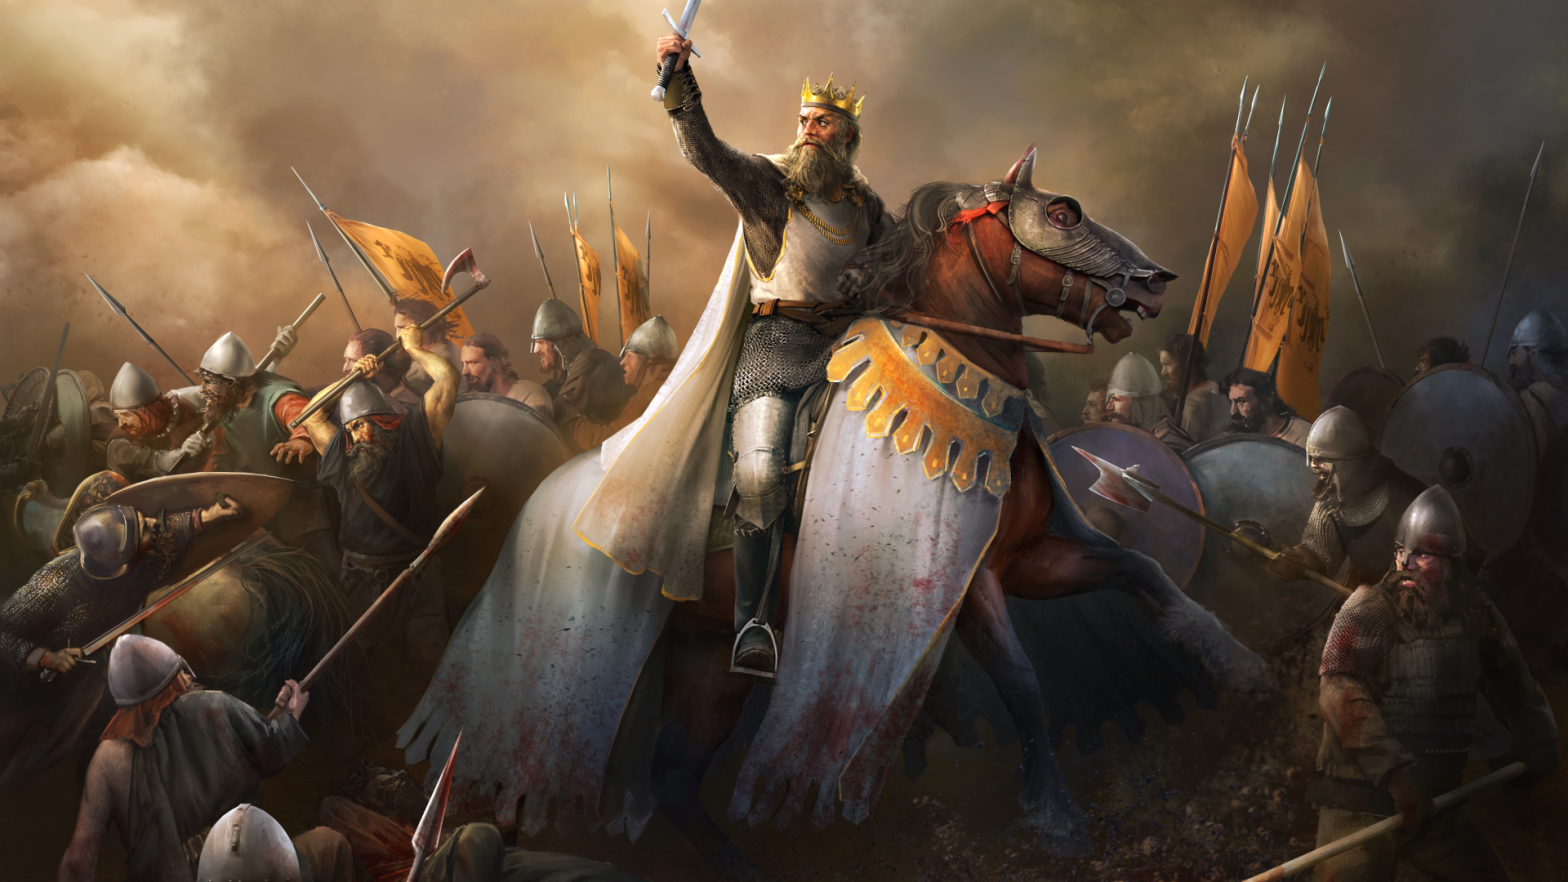 Image: Crusader Kings II